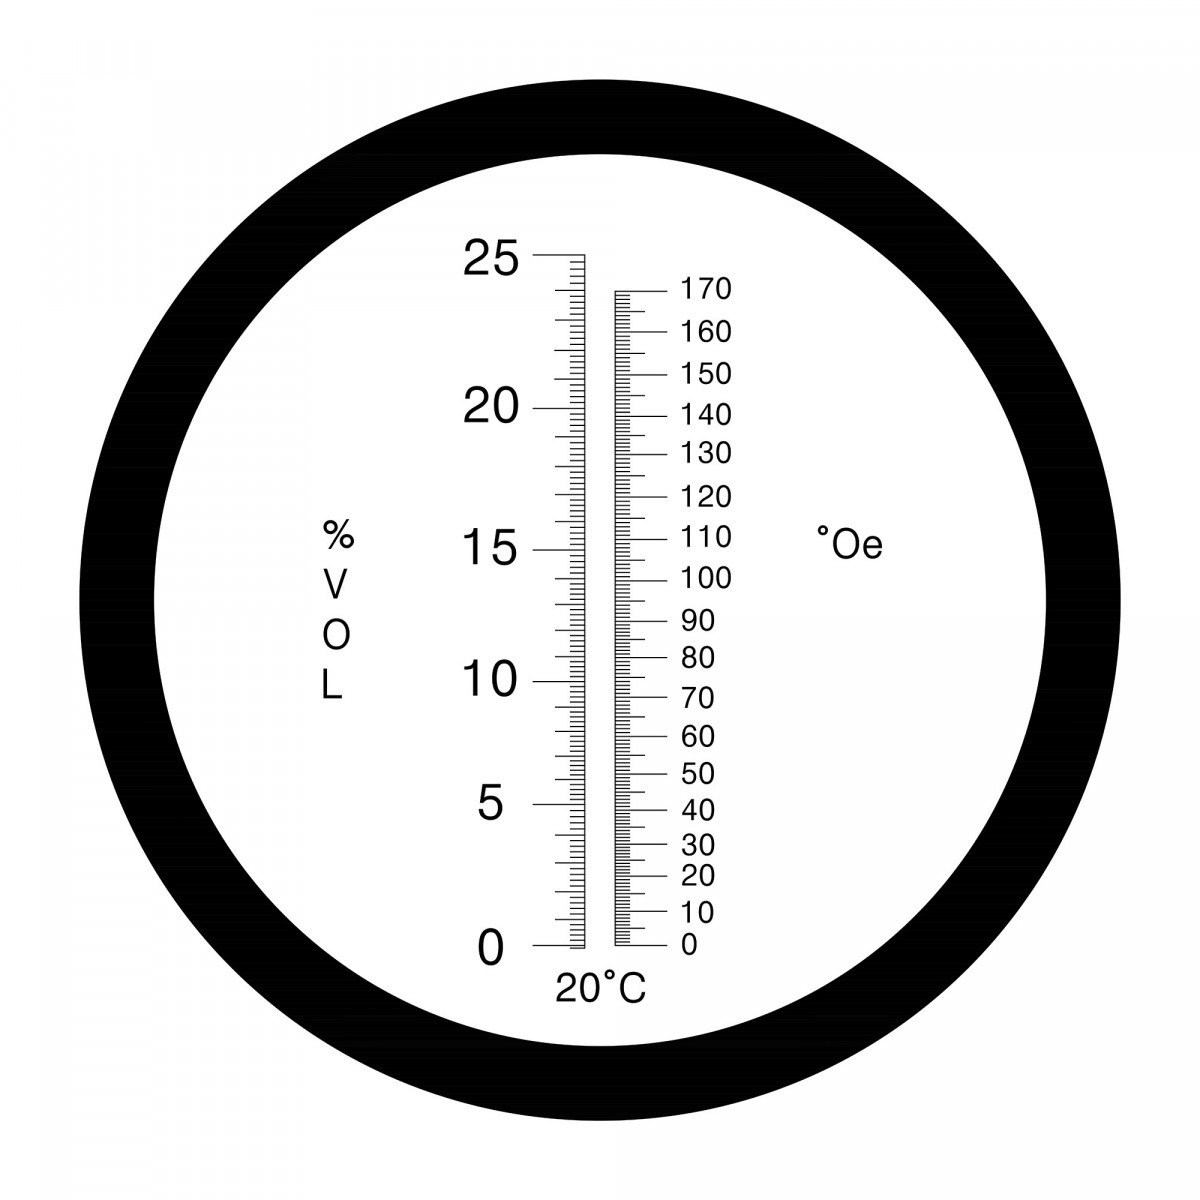 Réfractomètre 0-170 °Oe / 0-25 % vol. avec ATC